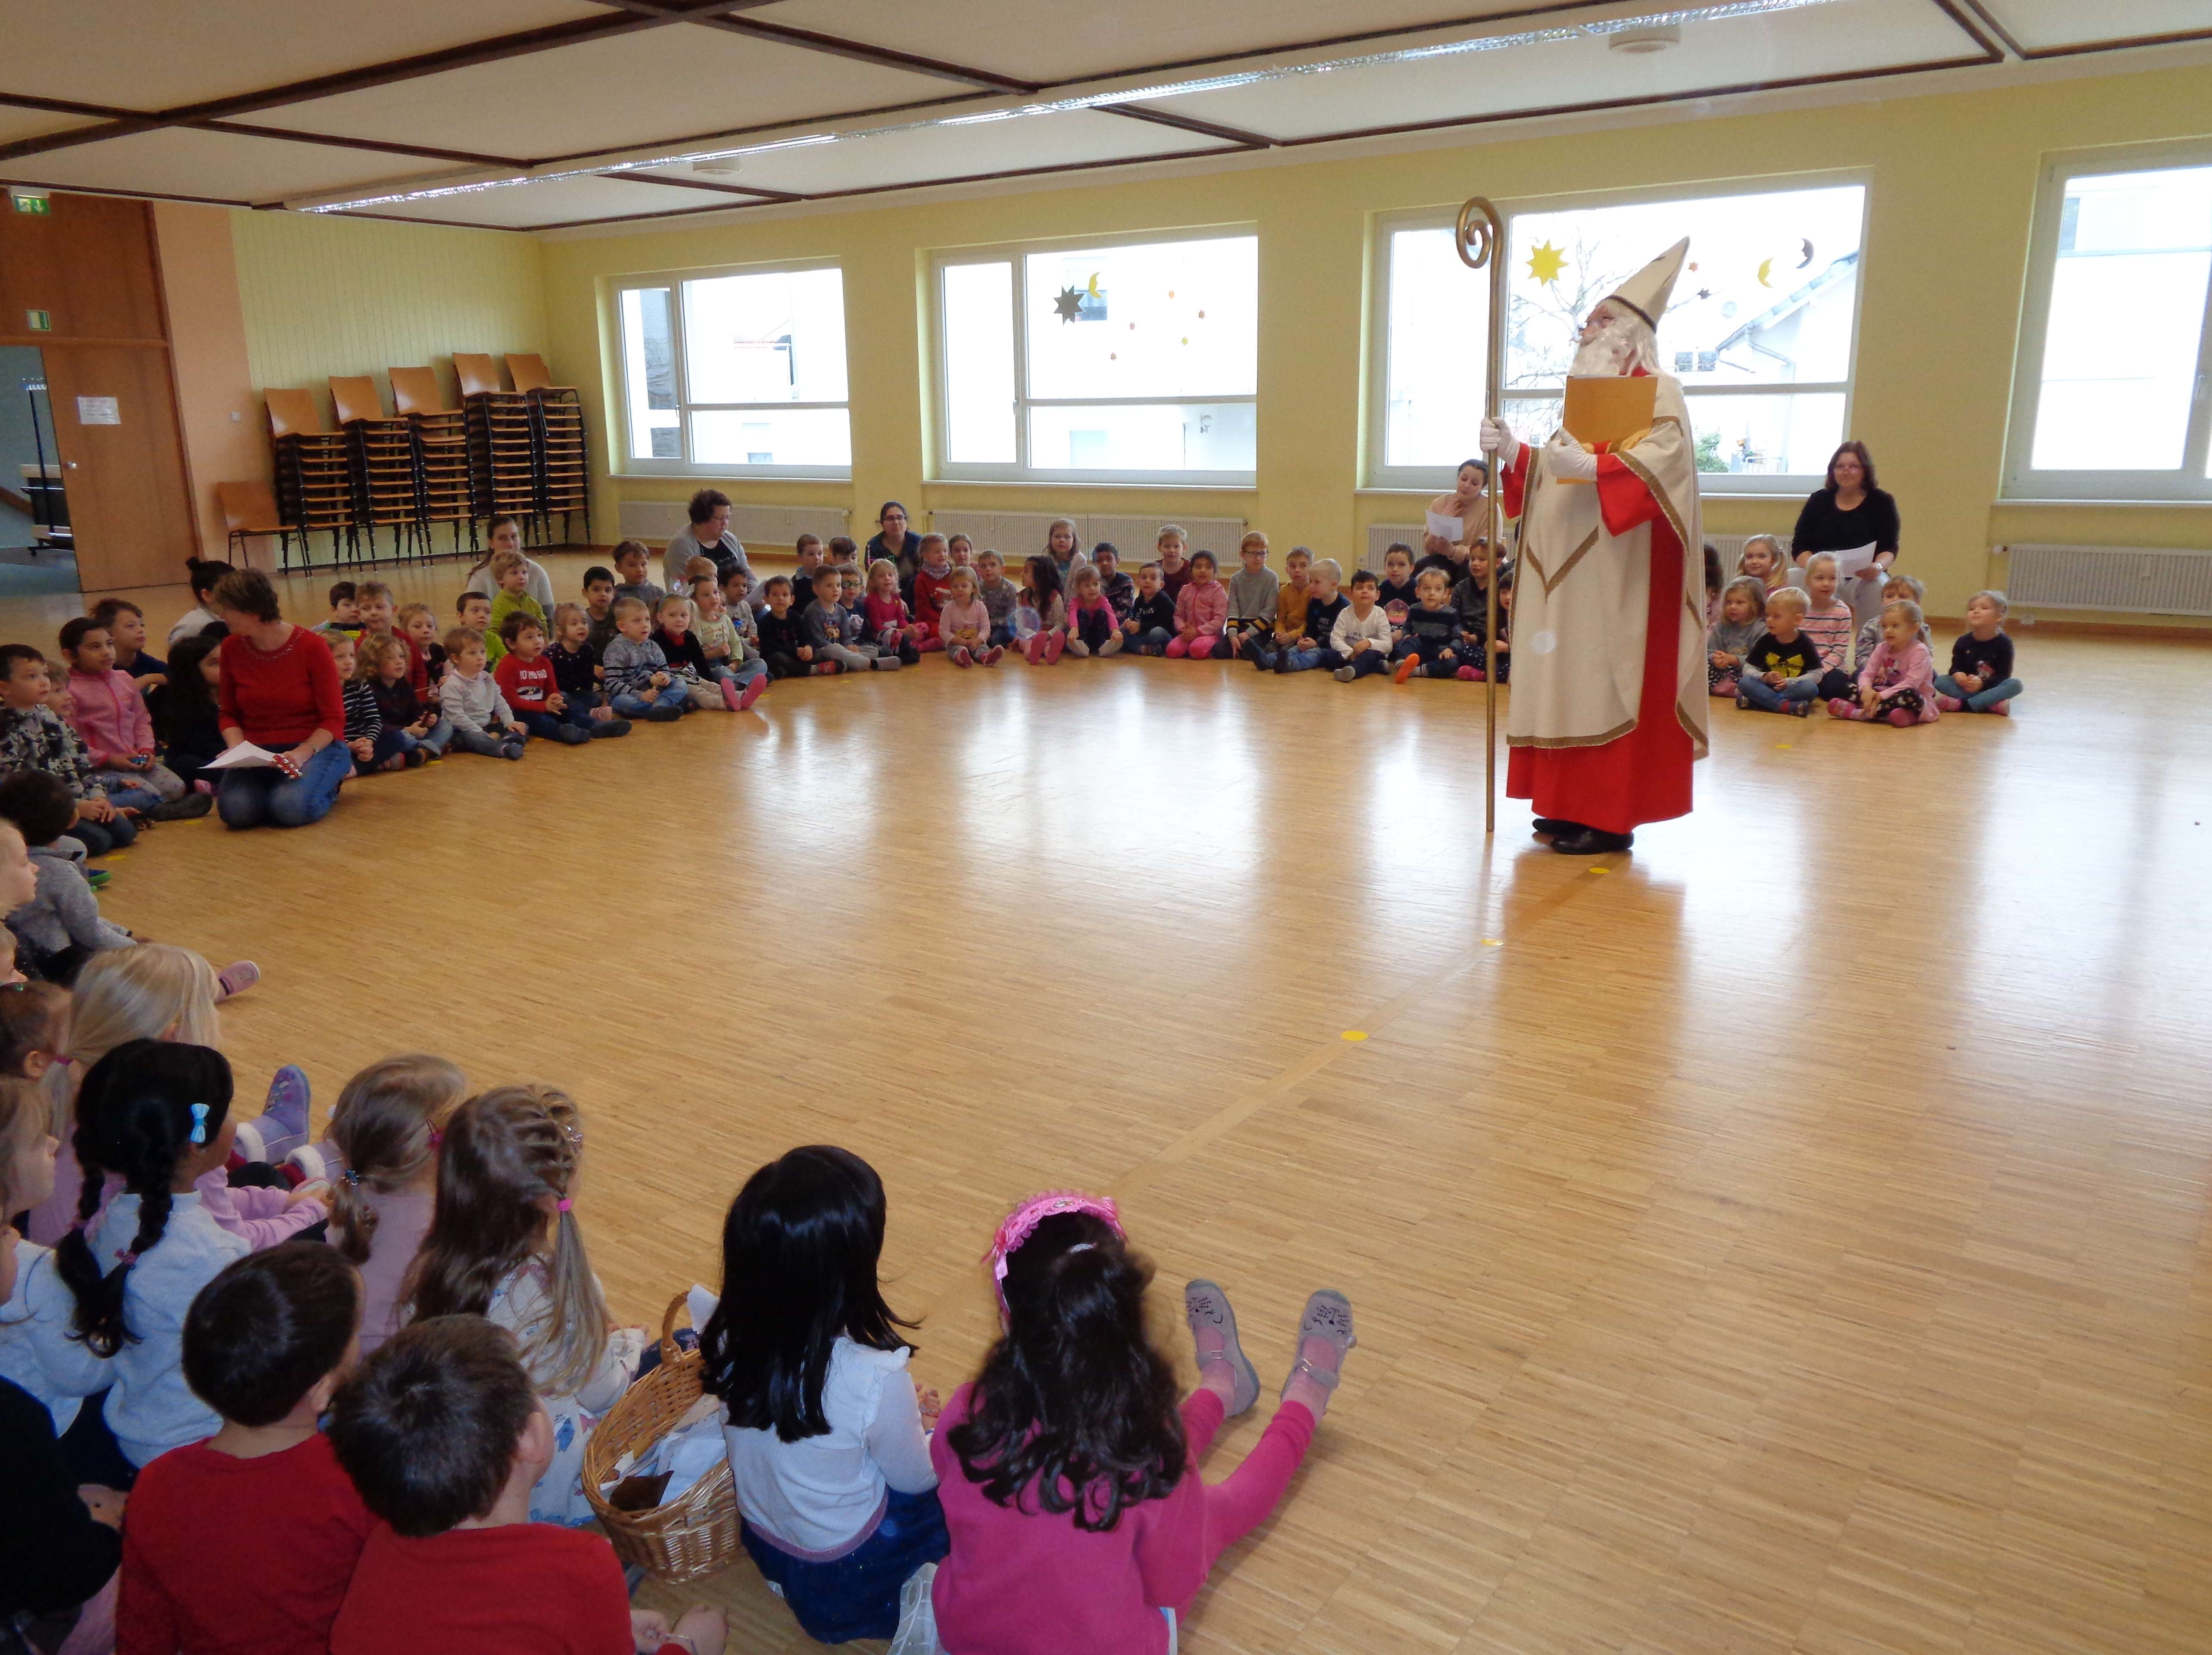  Am 6. Dezember trafen sich alle Gruppen des Pestalozzi-Kindergartens gemeinsam im Bonhoeffer-Saal zur gemeinschaftlichen Nikolausfeier 